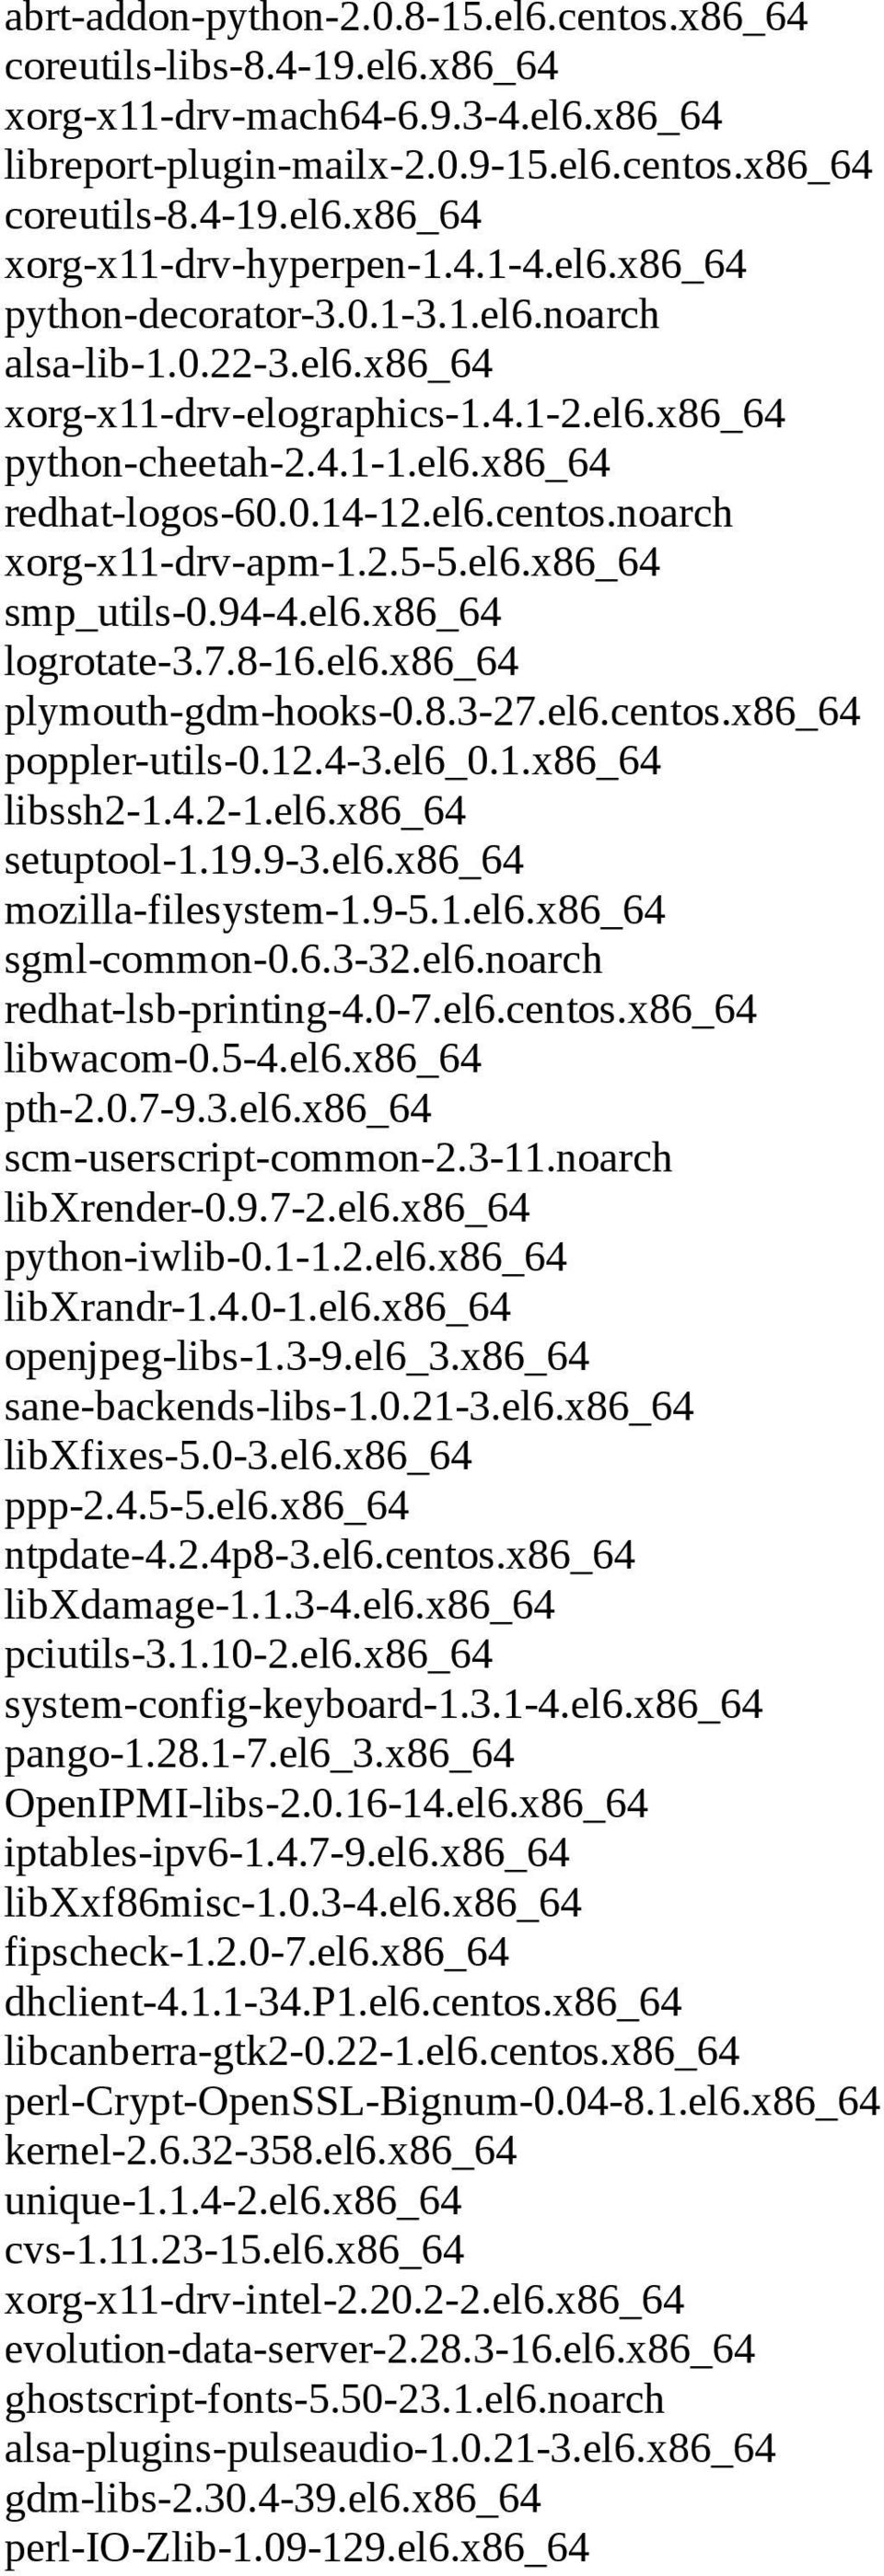 noarch xorg-x11-drv-apm-1.2.5-5.el6.x86_64 smp_utils-0.94-4.el6.x86_64 logrotate-3.7.8-16.el6.x86_64 plymouth-gdm-hooks-0.8.3-27.el6.centos.x86_64 poppler-utils-0.12.4-3.el6_0.1.x86_64 libssh2-1.4.2-1.el6.x86_64 setuptool-1.